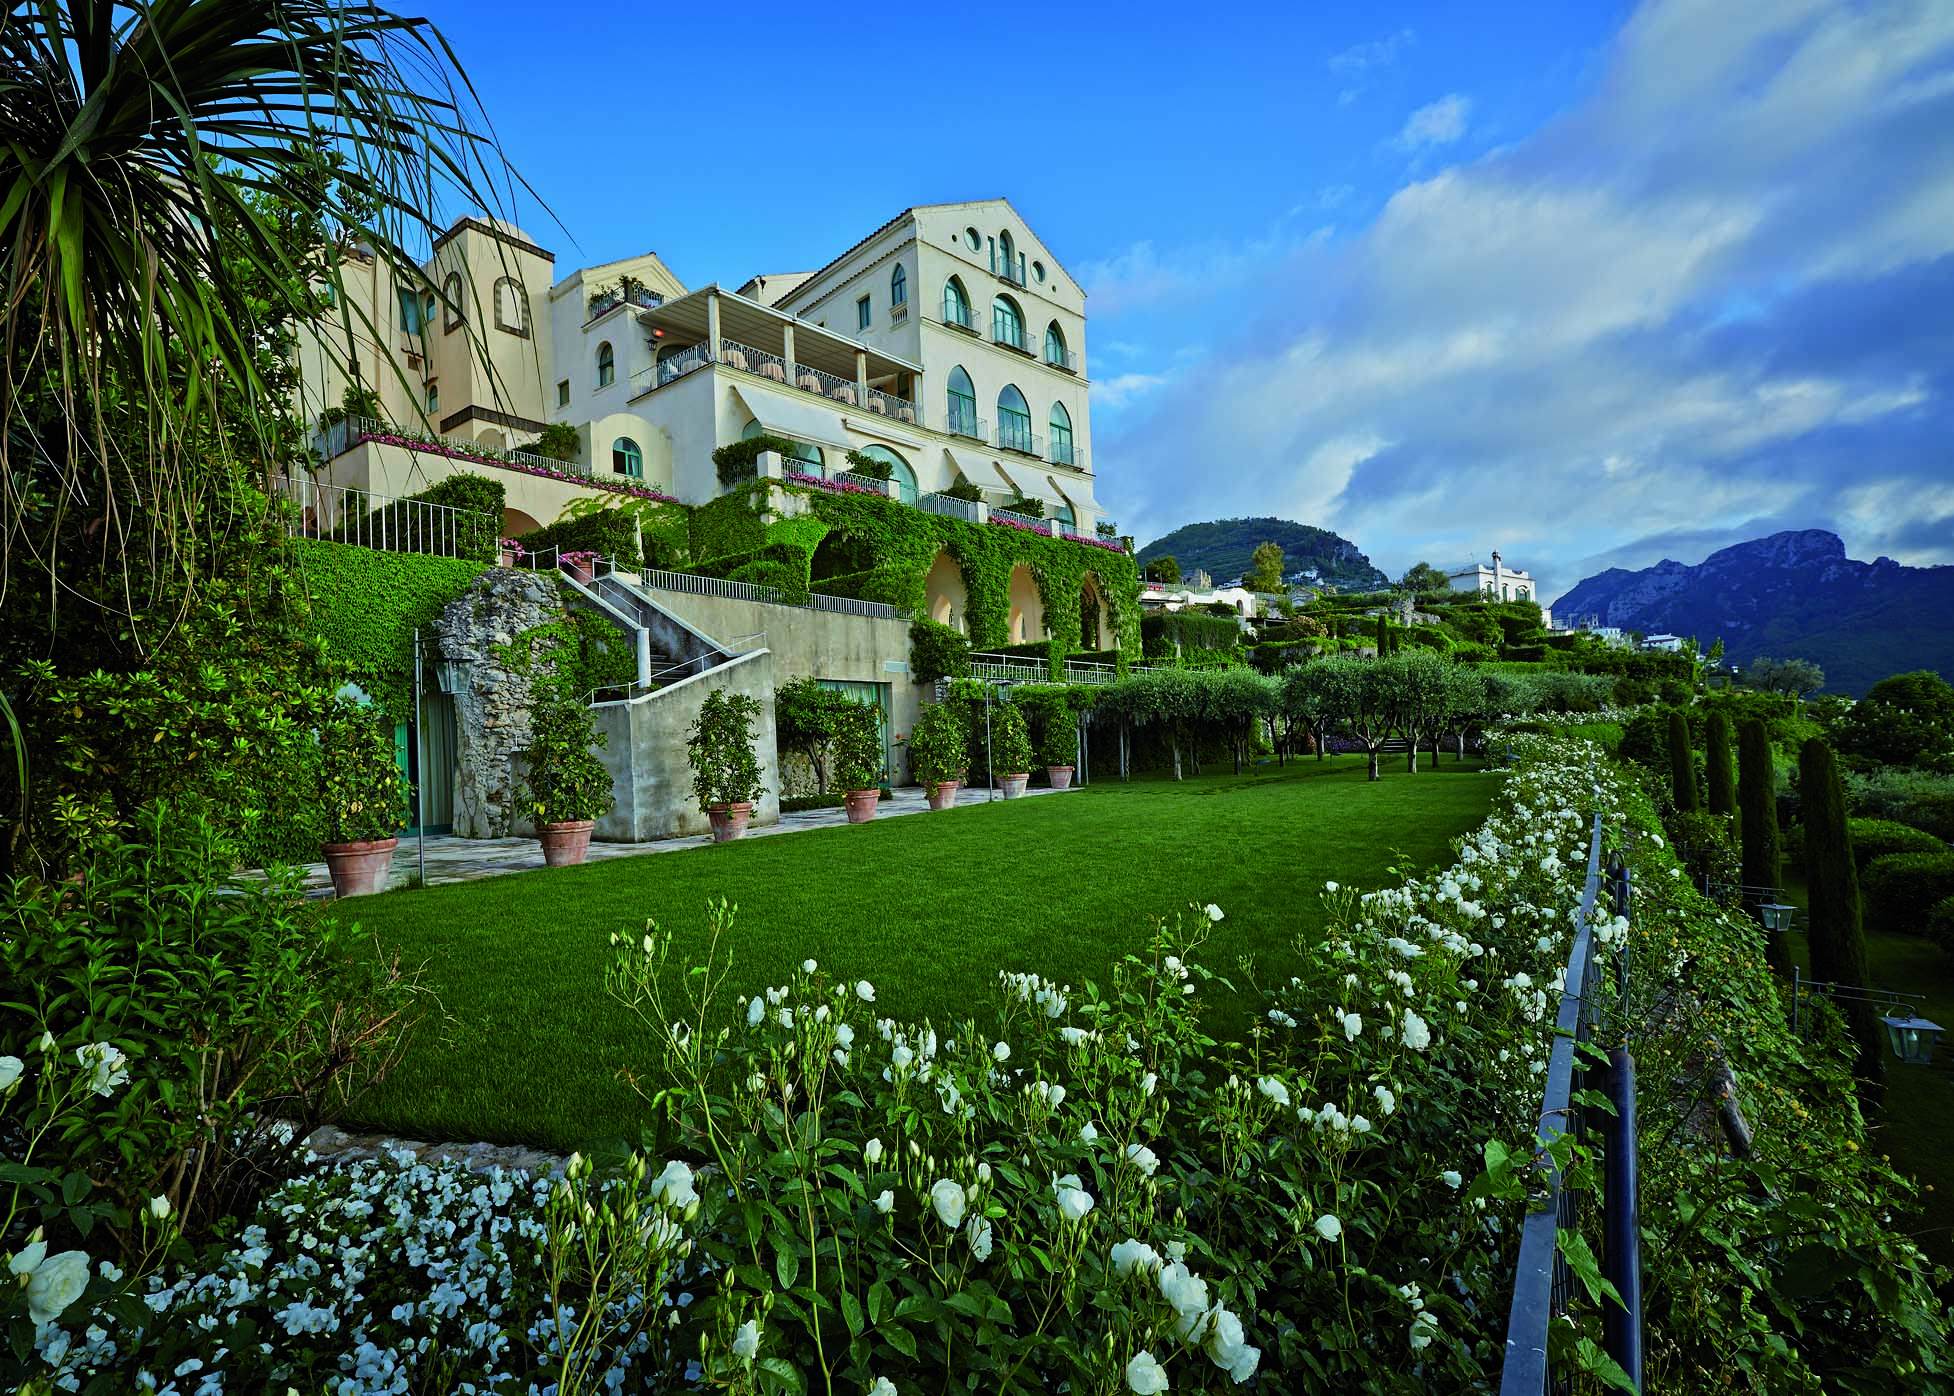 Los 11 hoteles más hermosos del mundo - 11